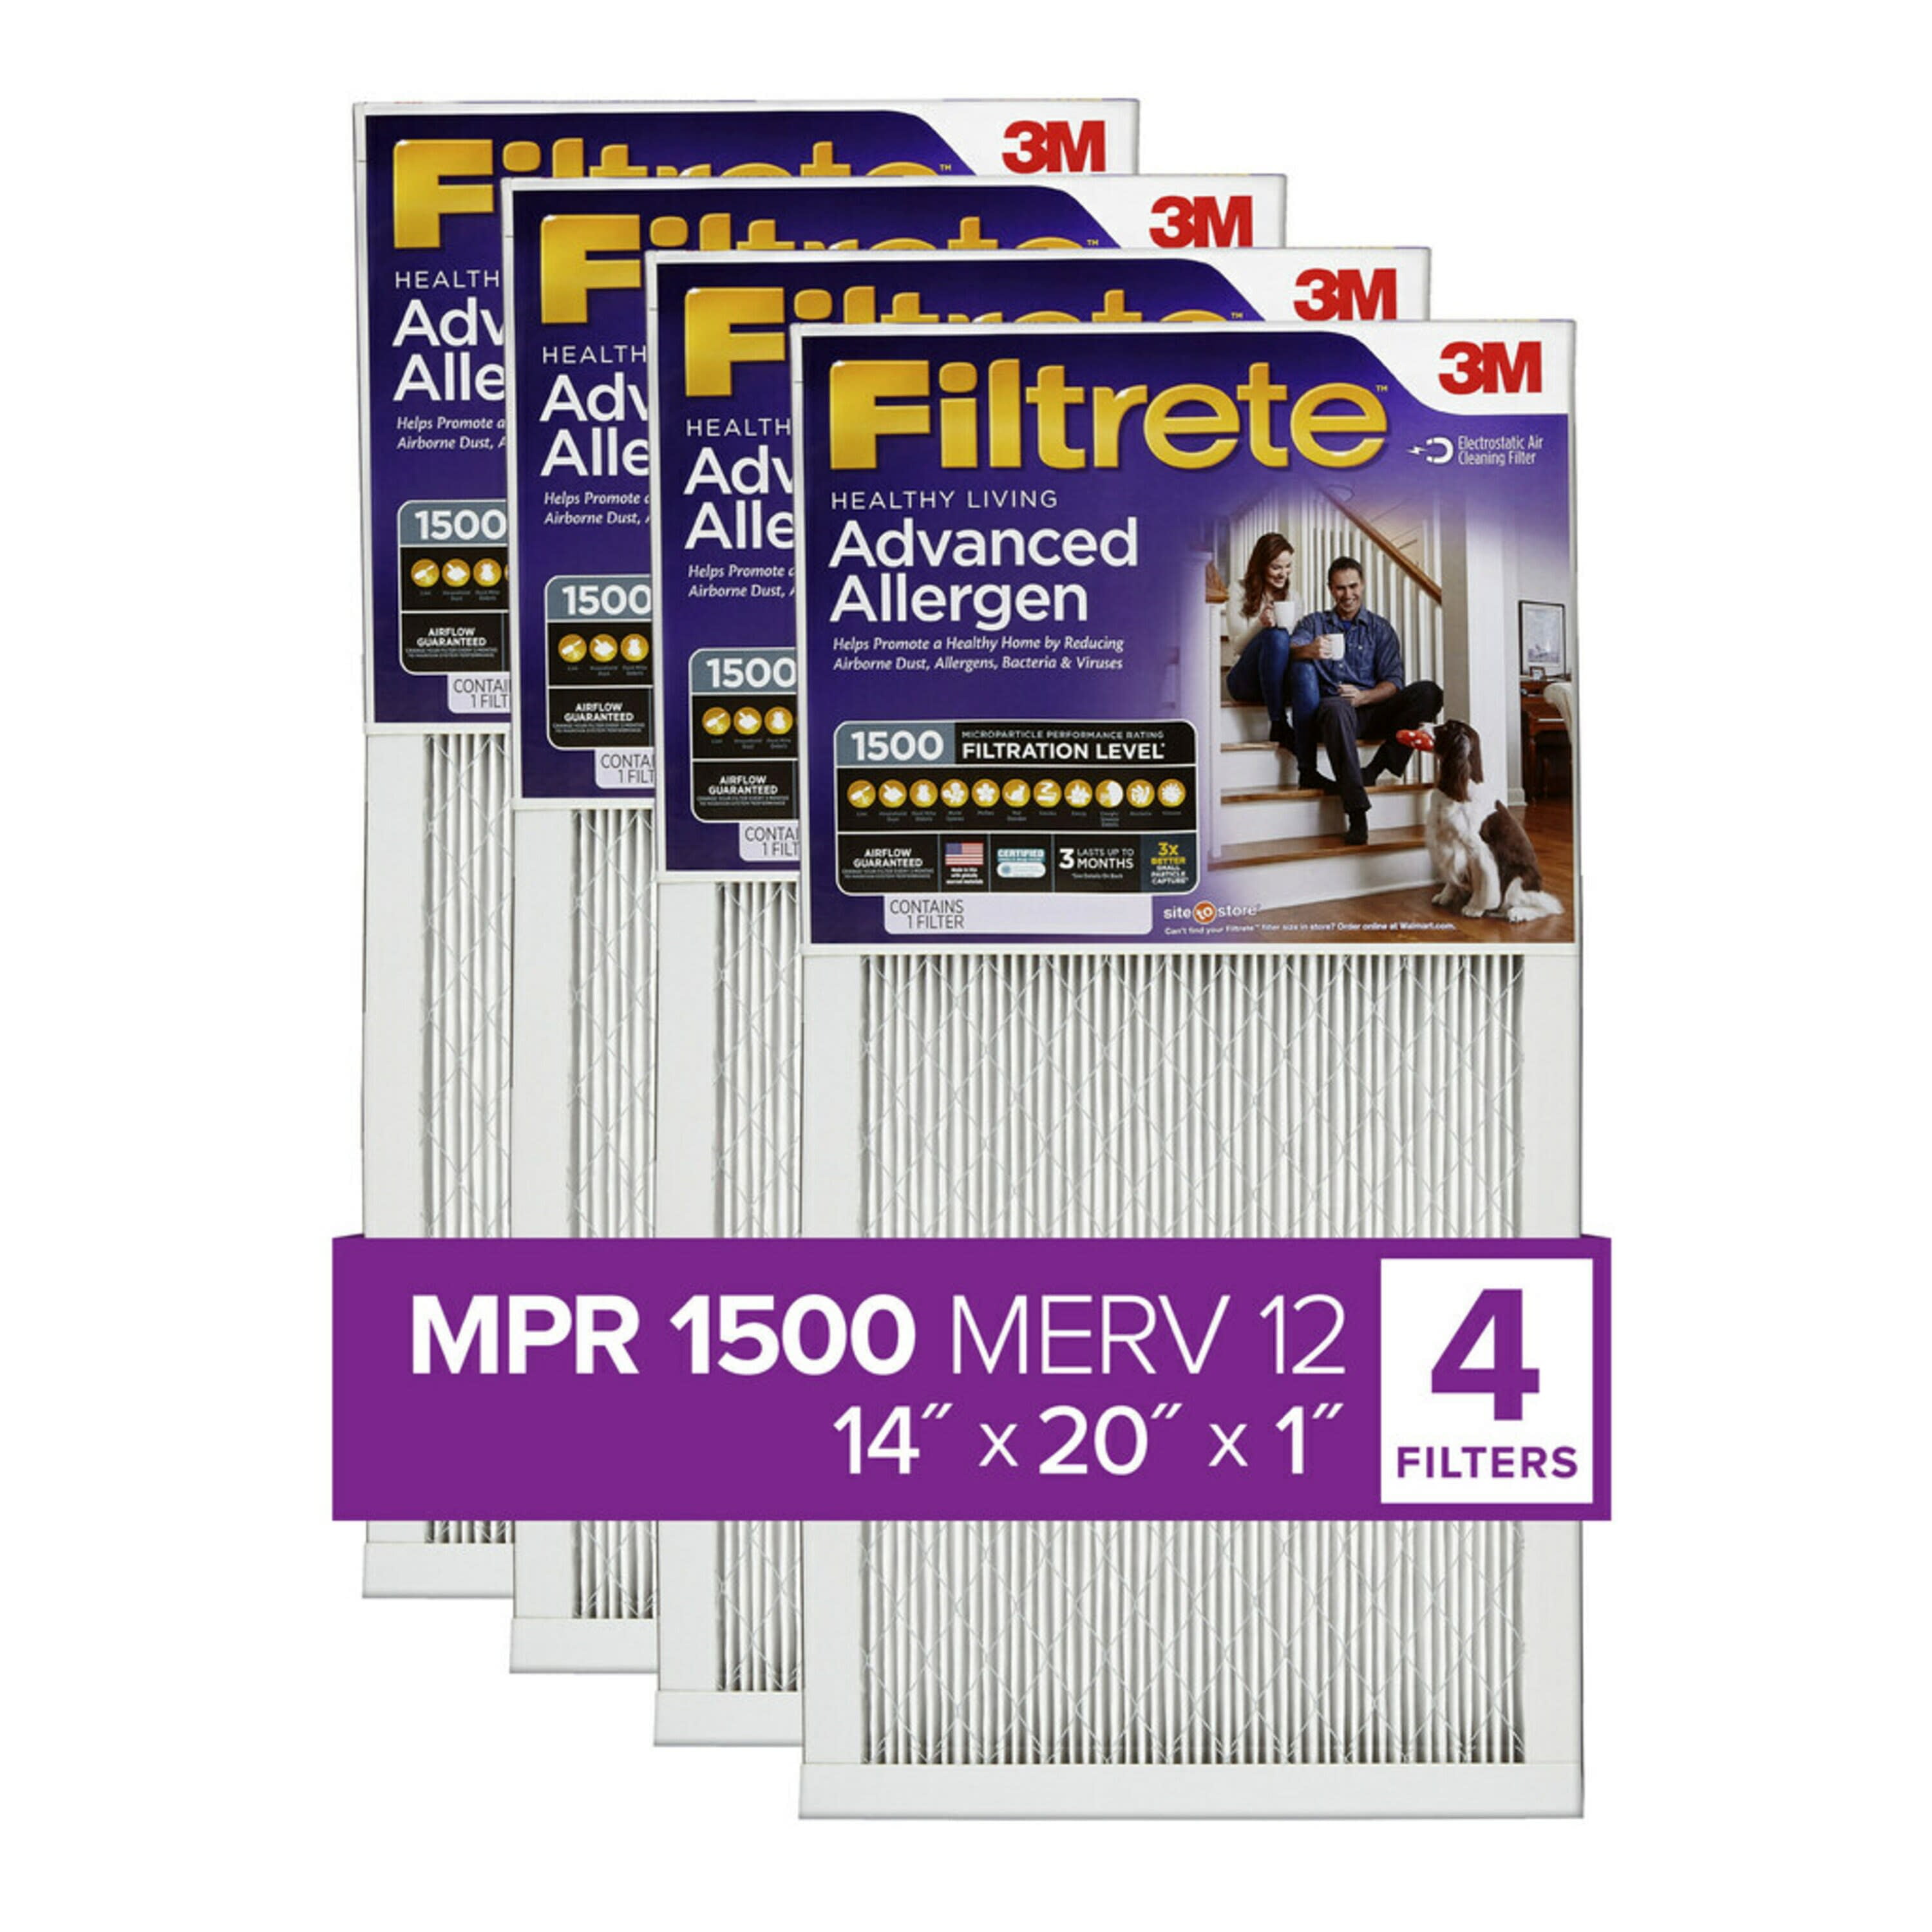 12 Pack Air Filter Furnace 3M Filtrete 1000 Mpr Micro Allergen MERV 11 14x20x1